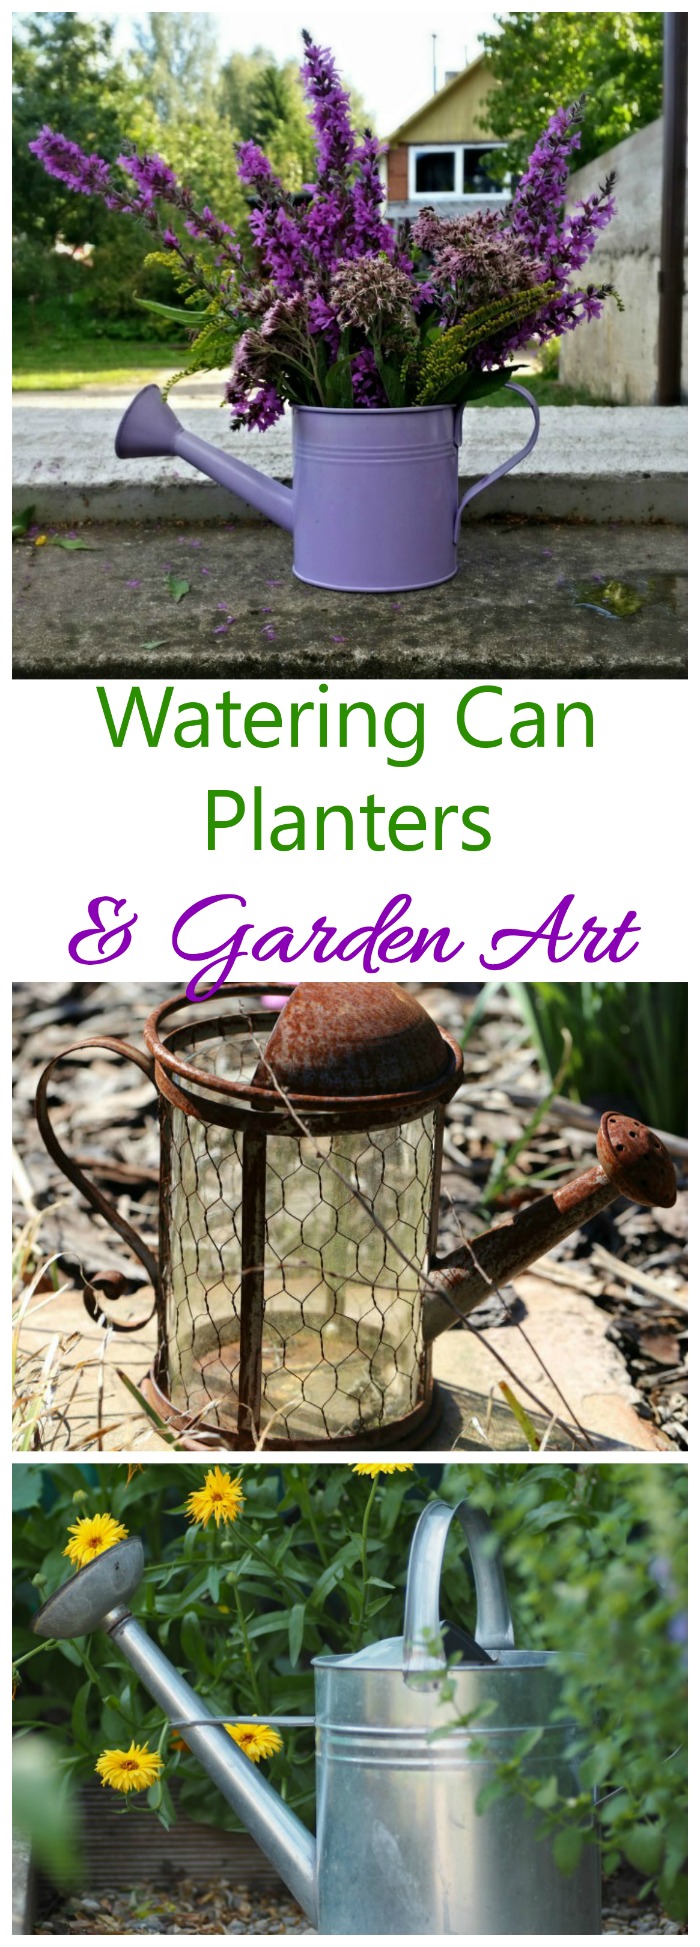 Gießkannen-Pflanzgefäße und Gartenkunst - Recyceln Sie Ihre Gießkannen